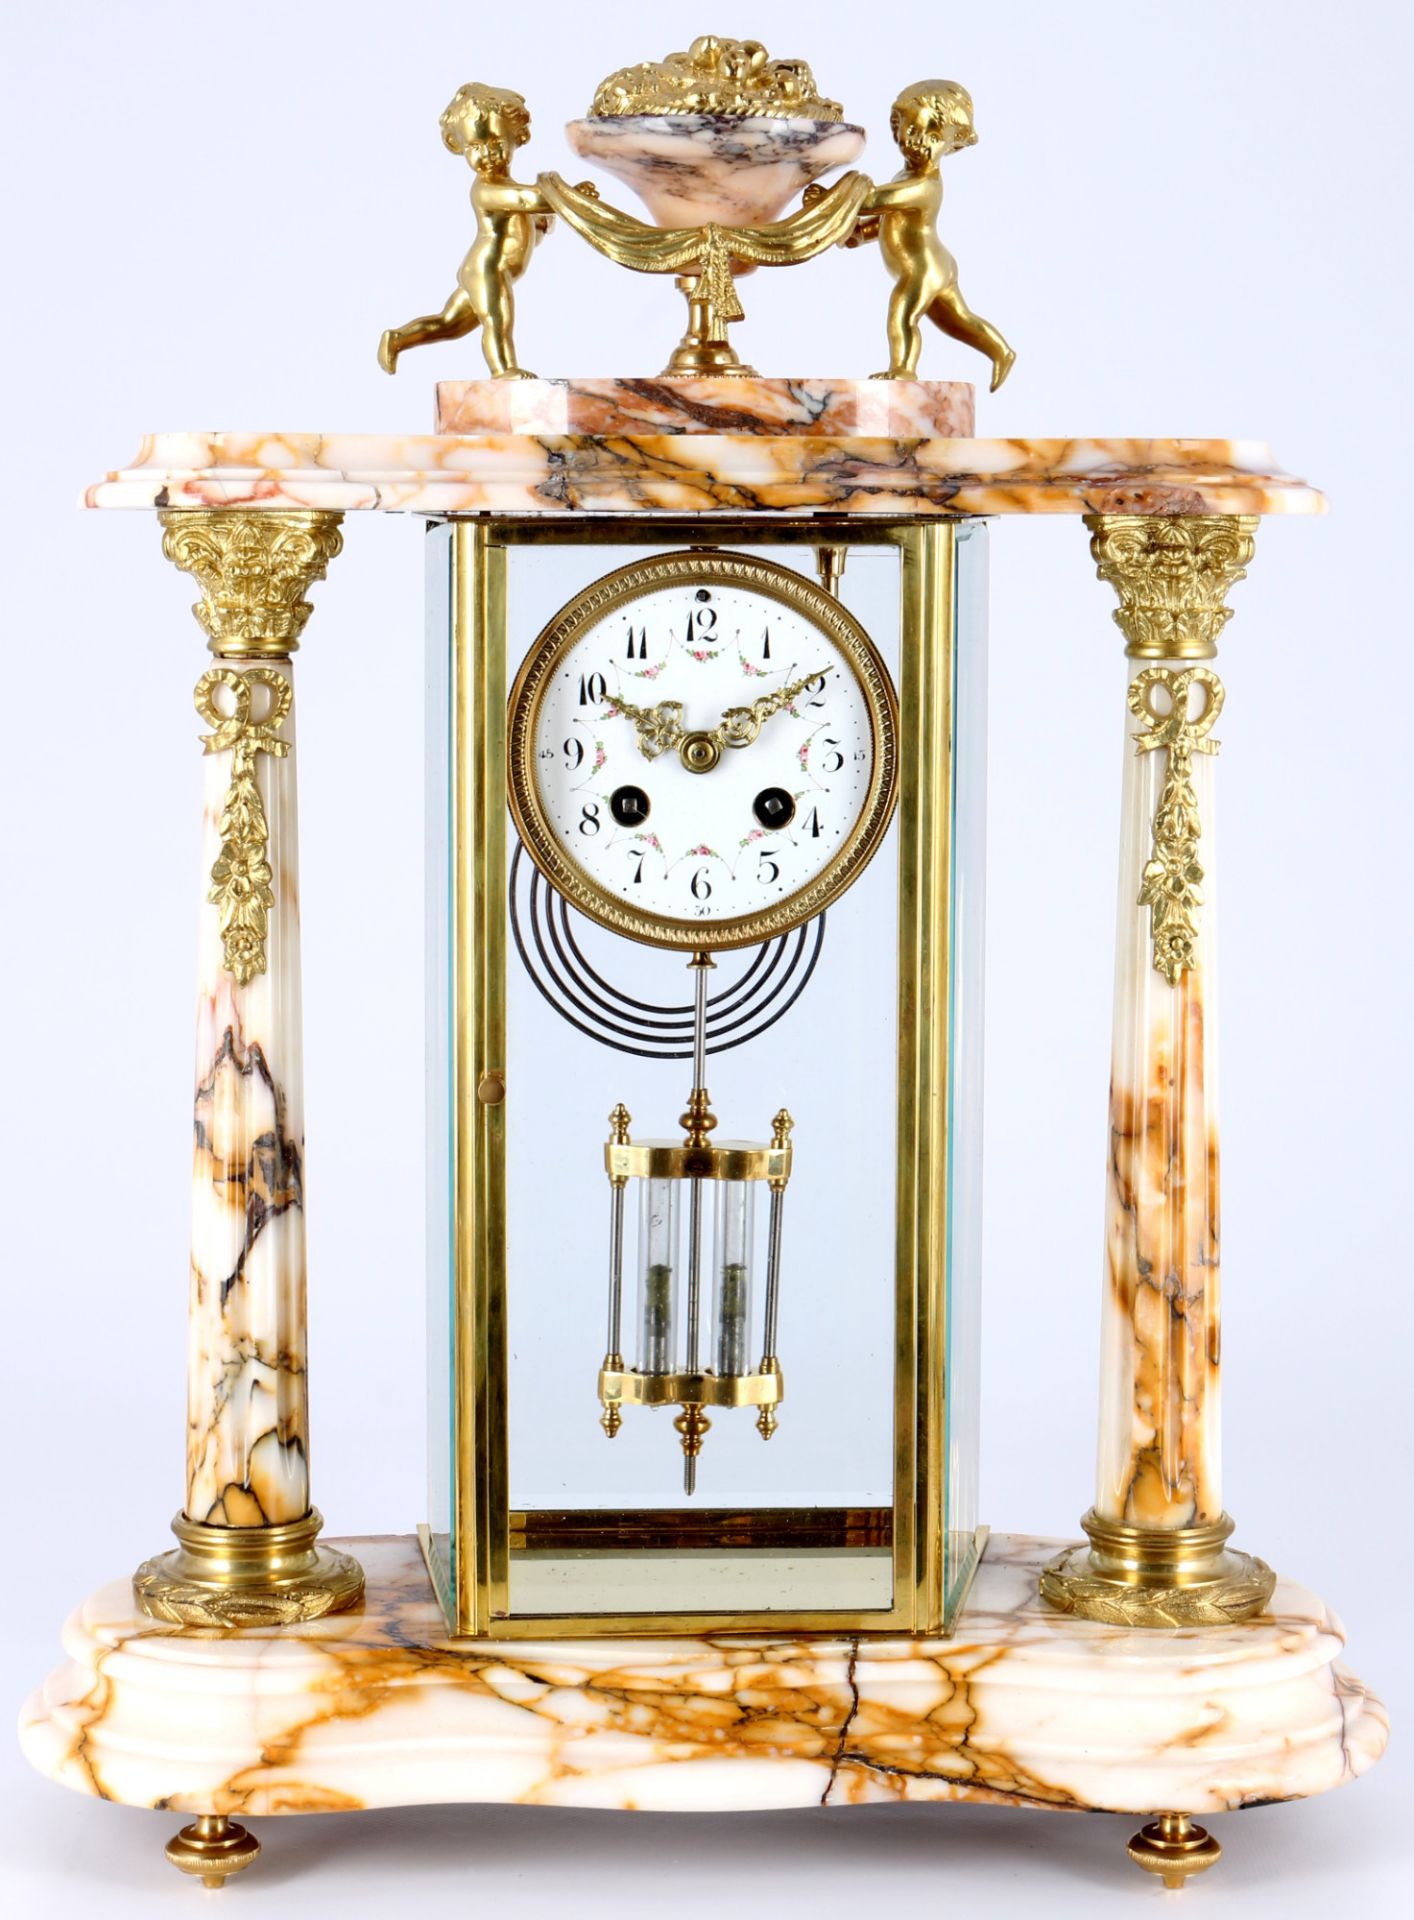 Glaspendule mit Beisteller Frankreich 19. Jahrhundert, french mantel clock 19th century, - Bild 2 aus 7